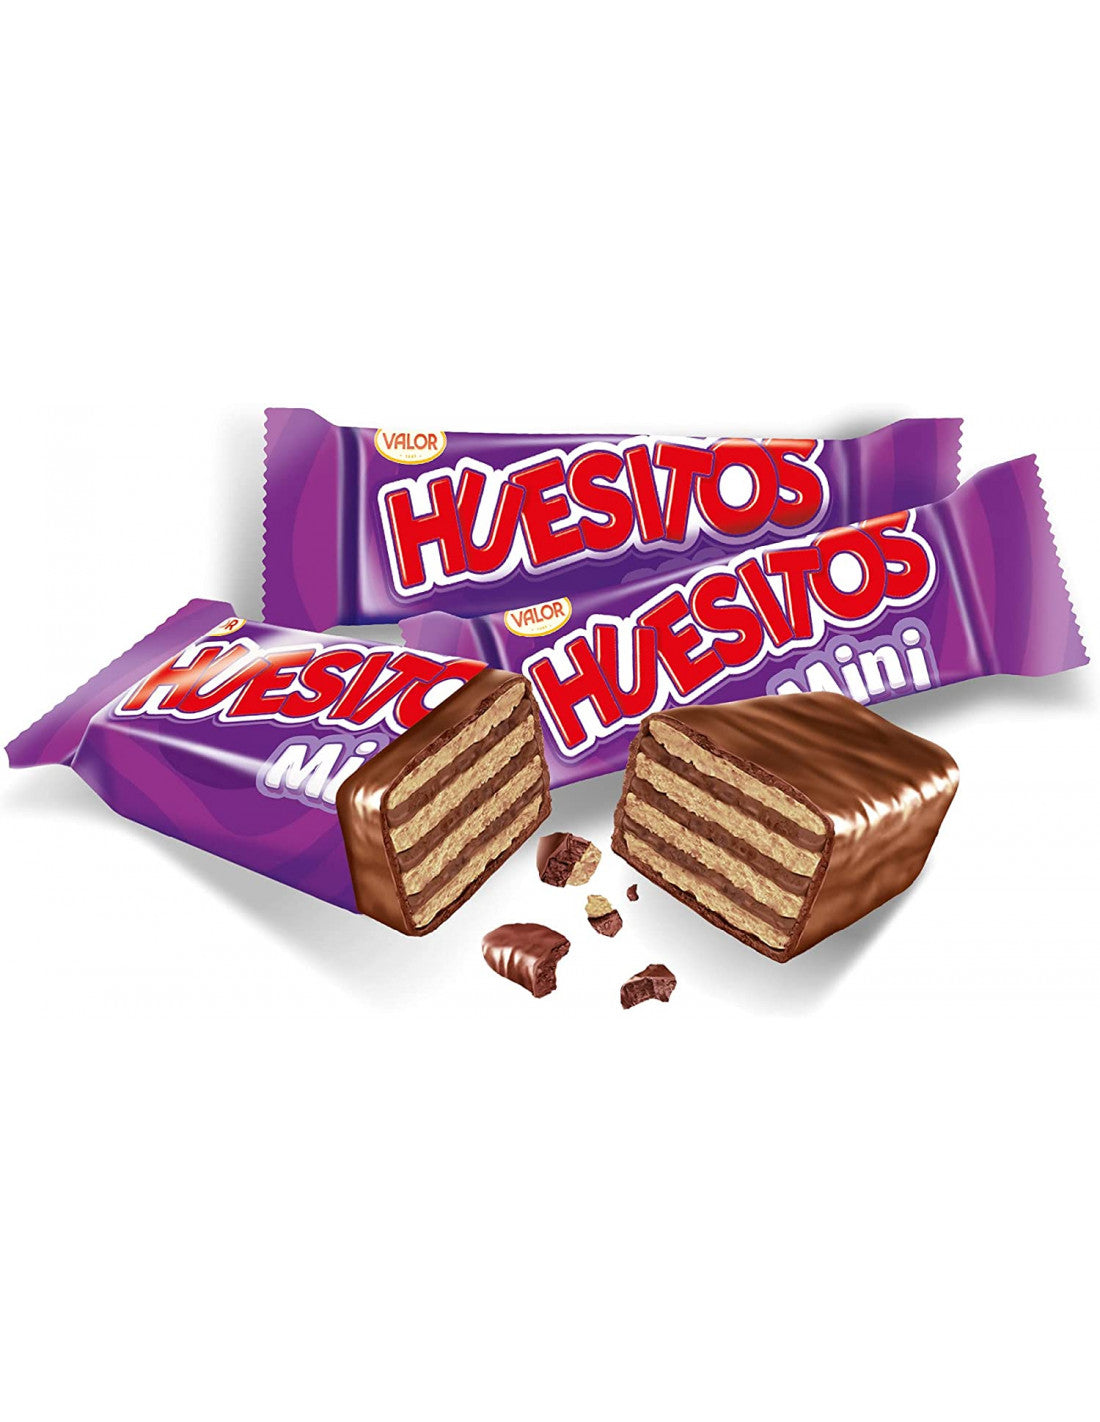 Valor Huesitos, Chocolate (Spain)